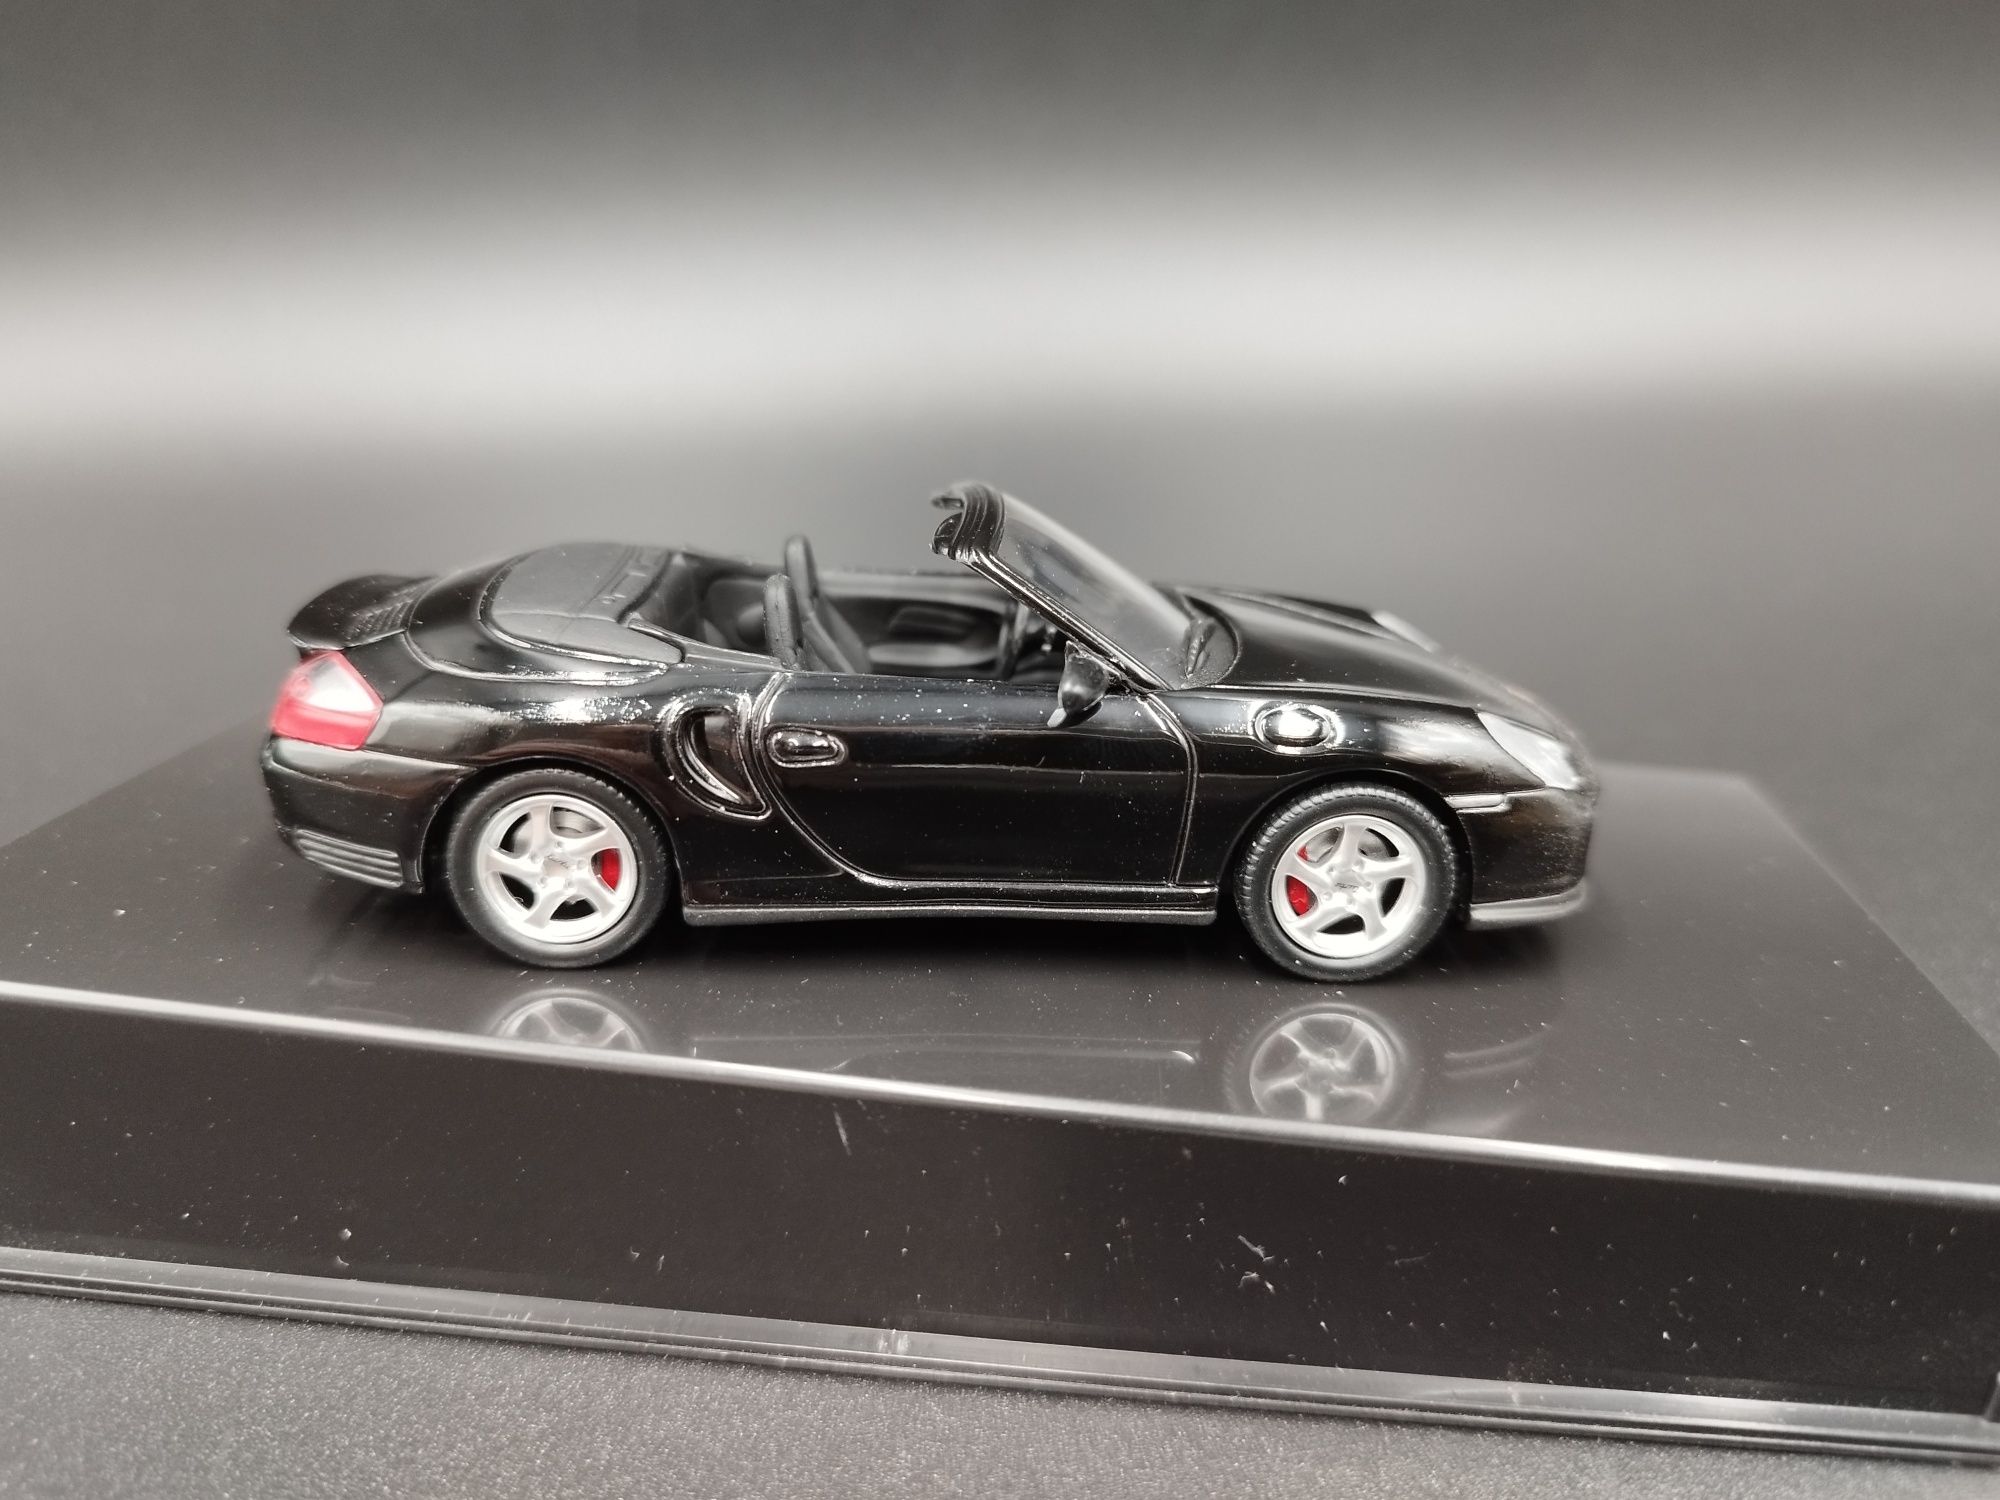 1:43 Joy city Porsche 911 Turbo  model nowy gablotka może mieć